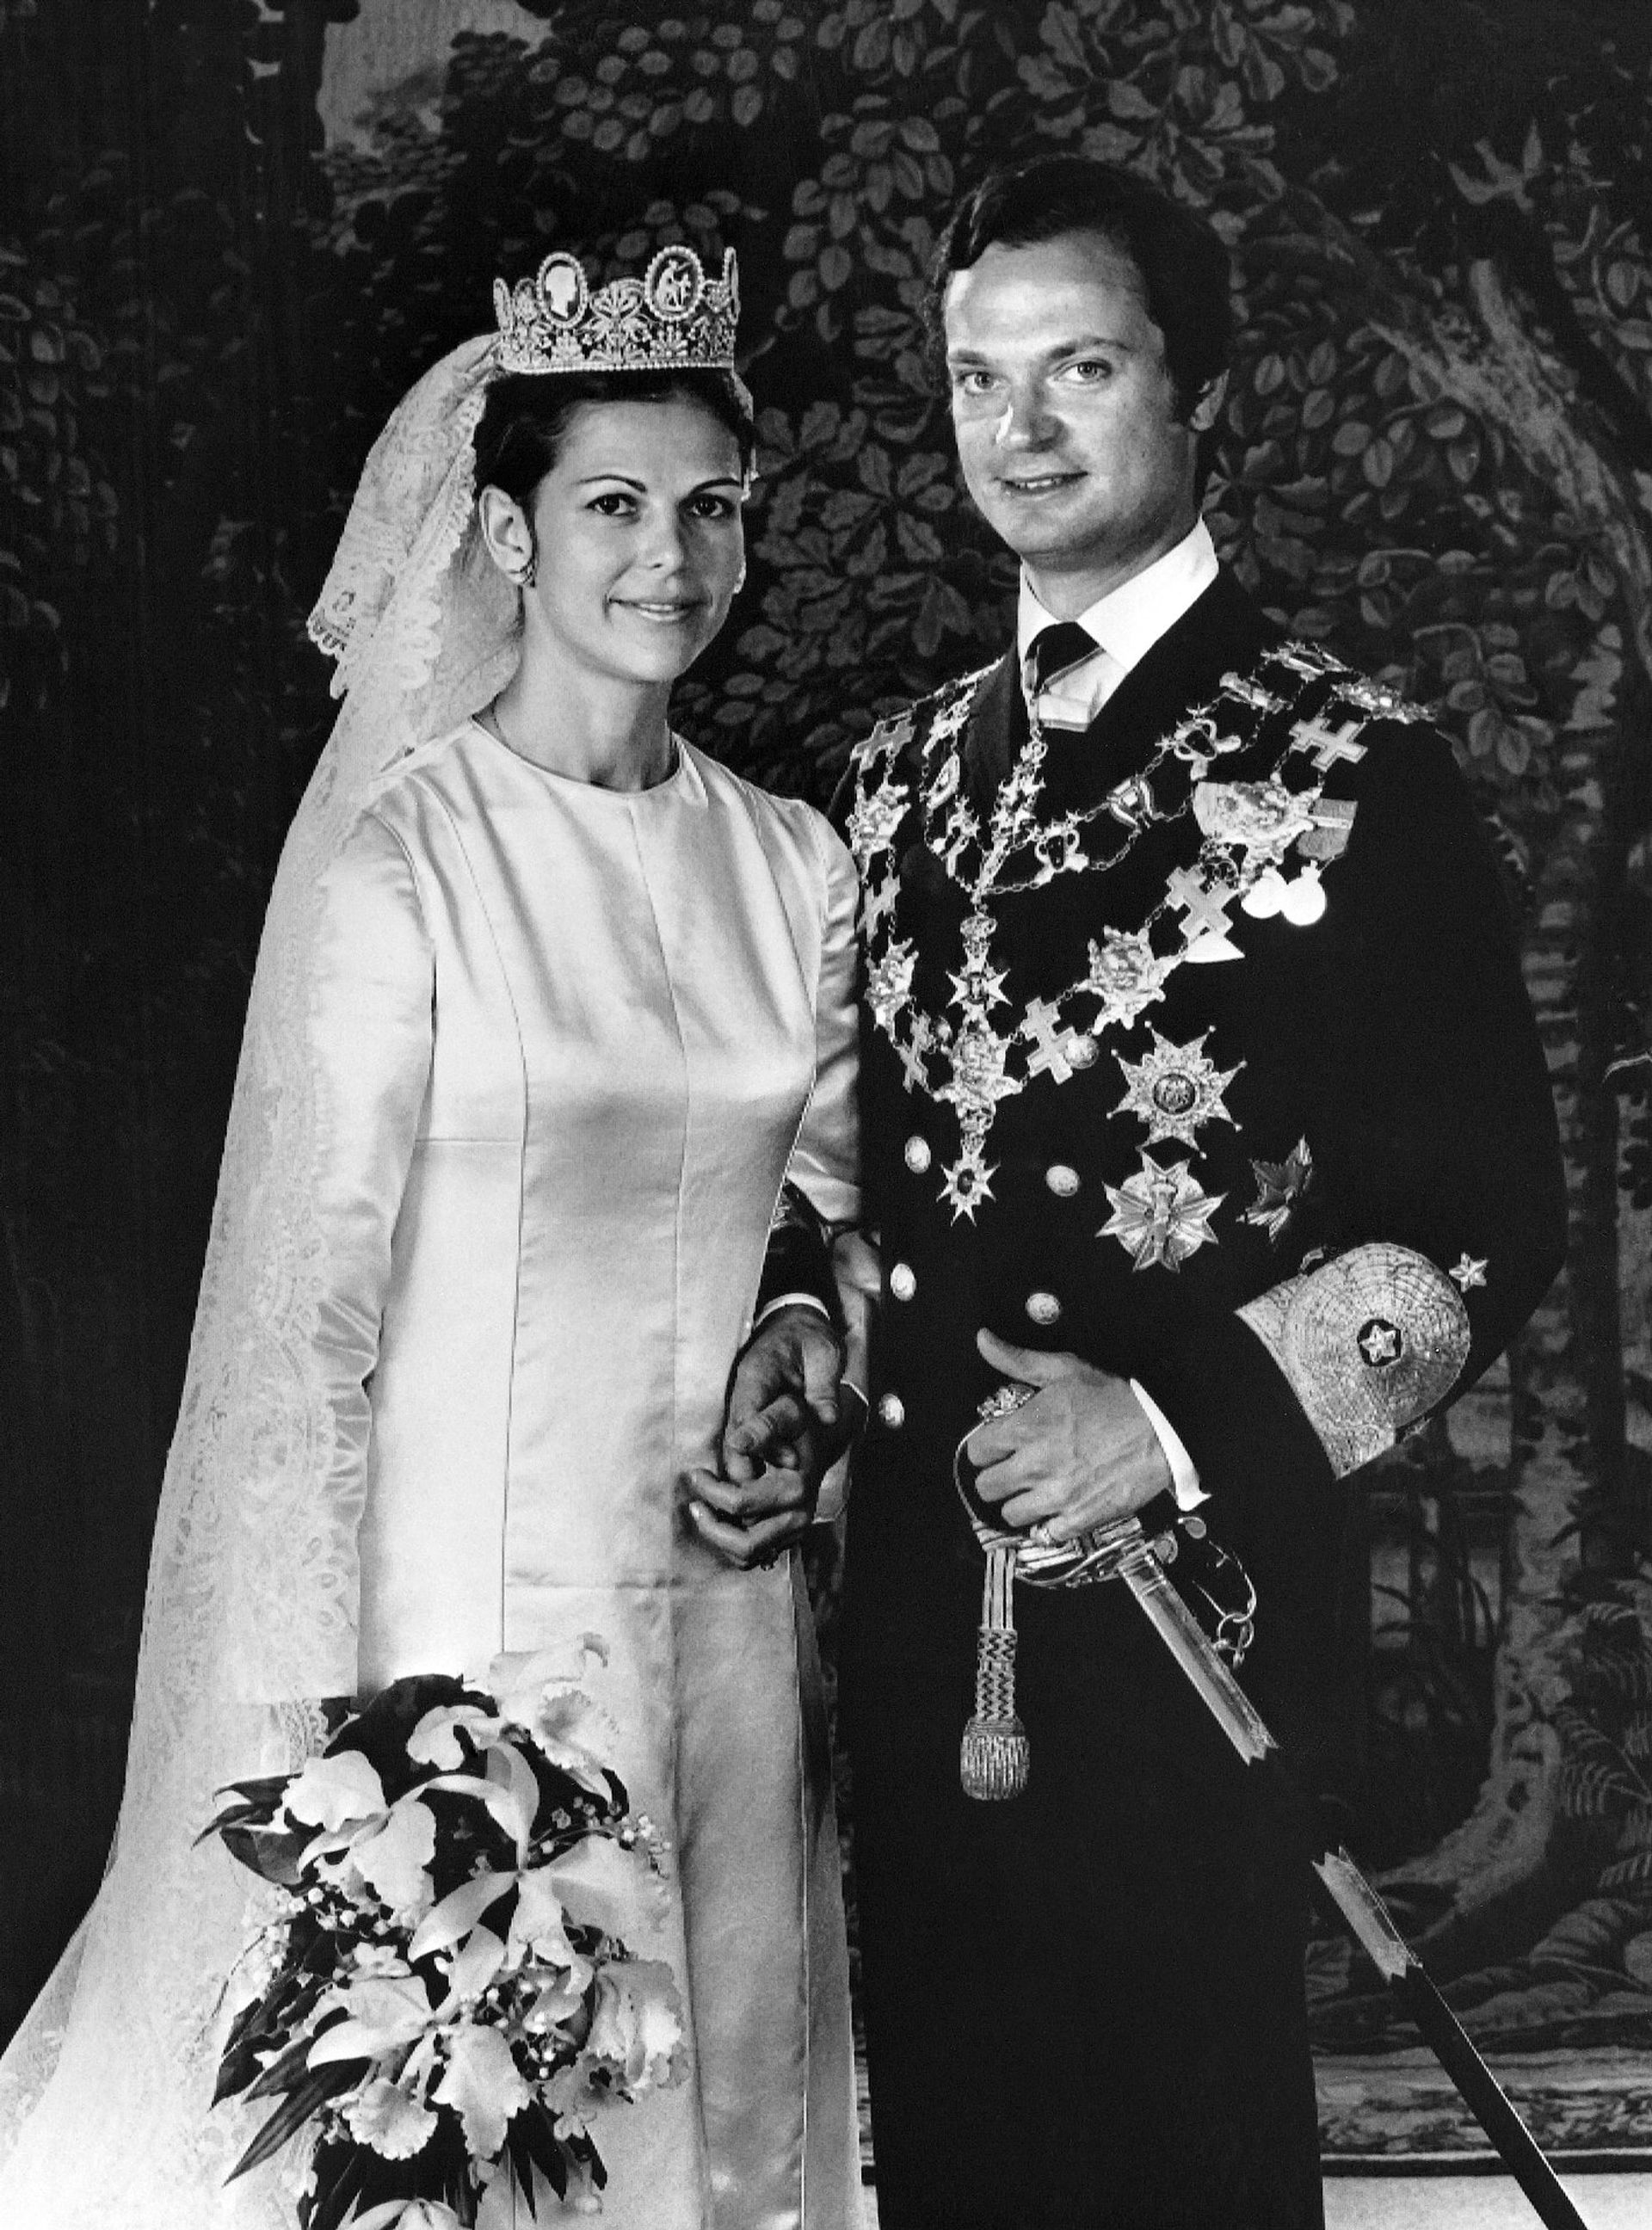 Op 19 juni 1976 trouwen ze in Stockholm. Silvia wordt na haar huwelijk gelijk koningin van Zweden.